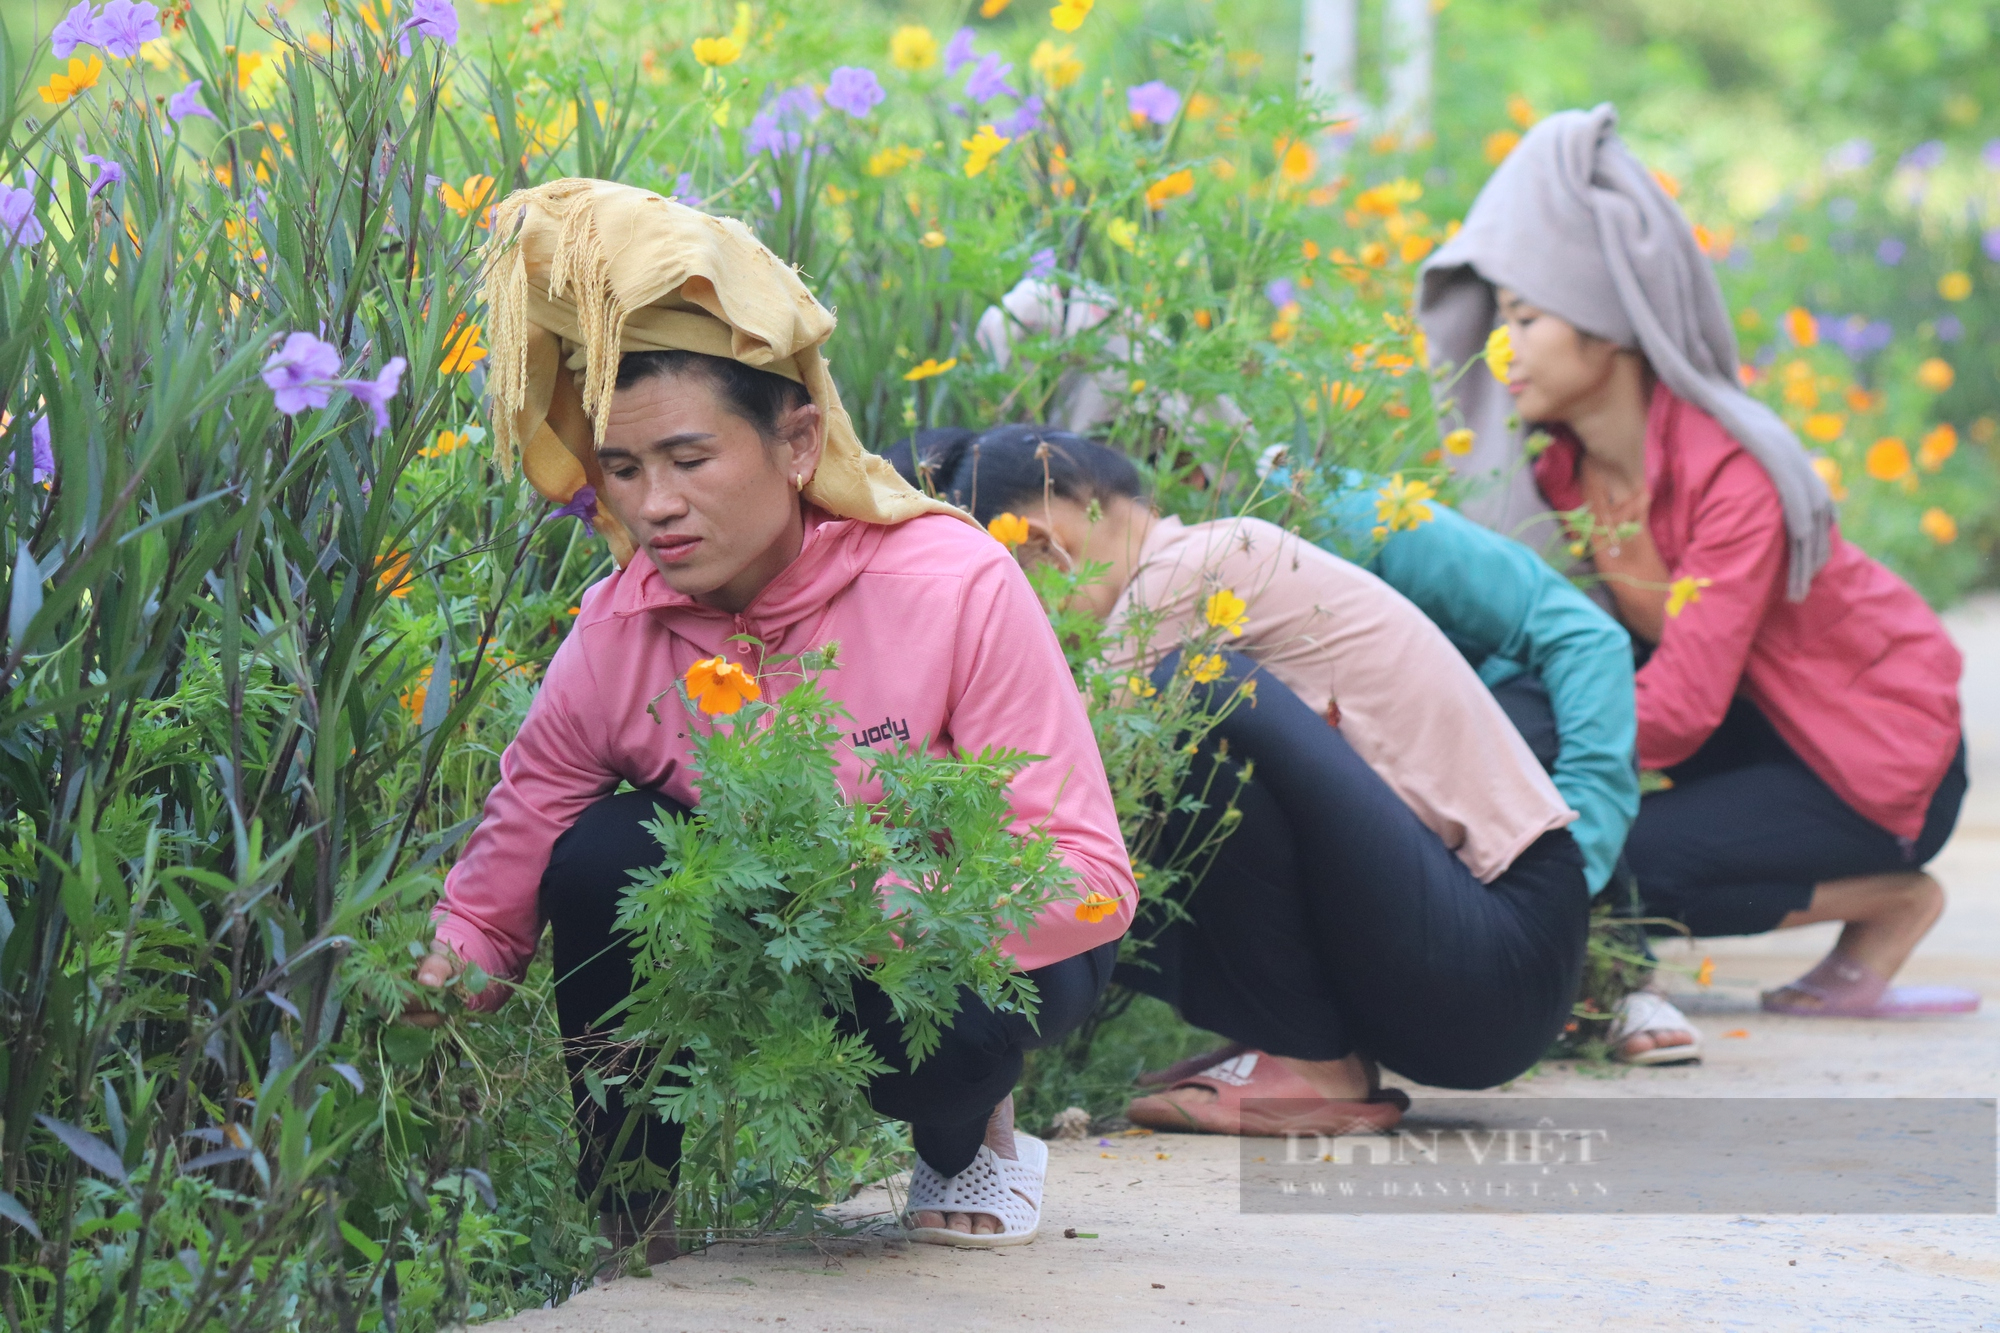 Mê mẩn con đường hoa nông thôn mới đẹp như tranh ở bản người Thái của tỉnh Sơn La - Ảnh 4.